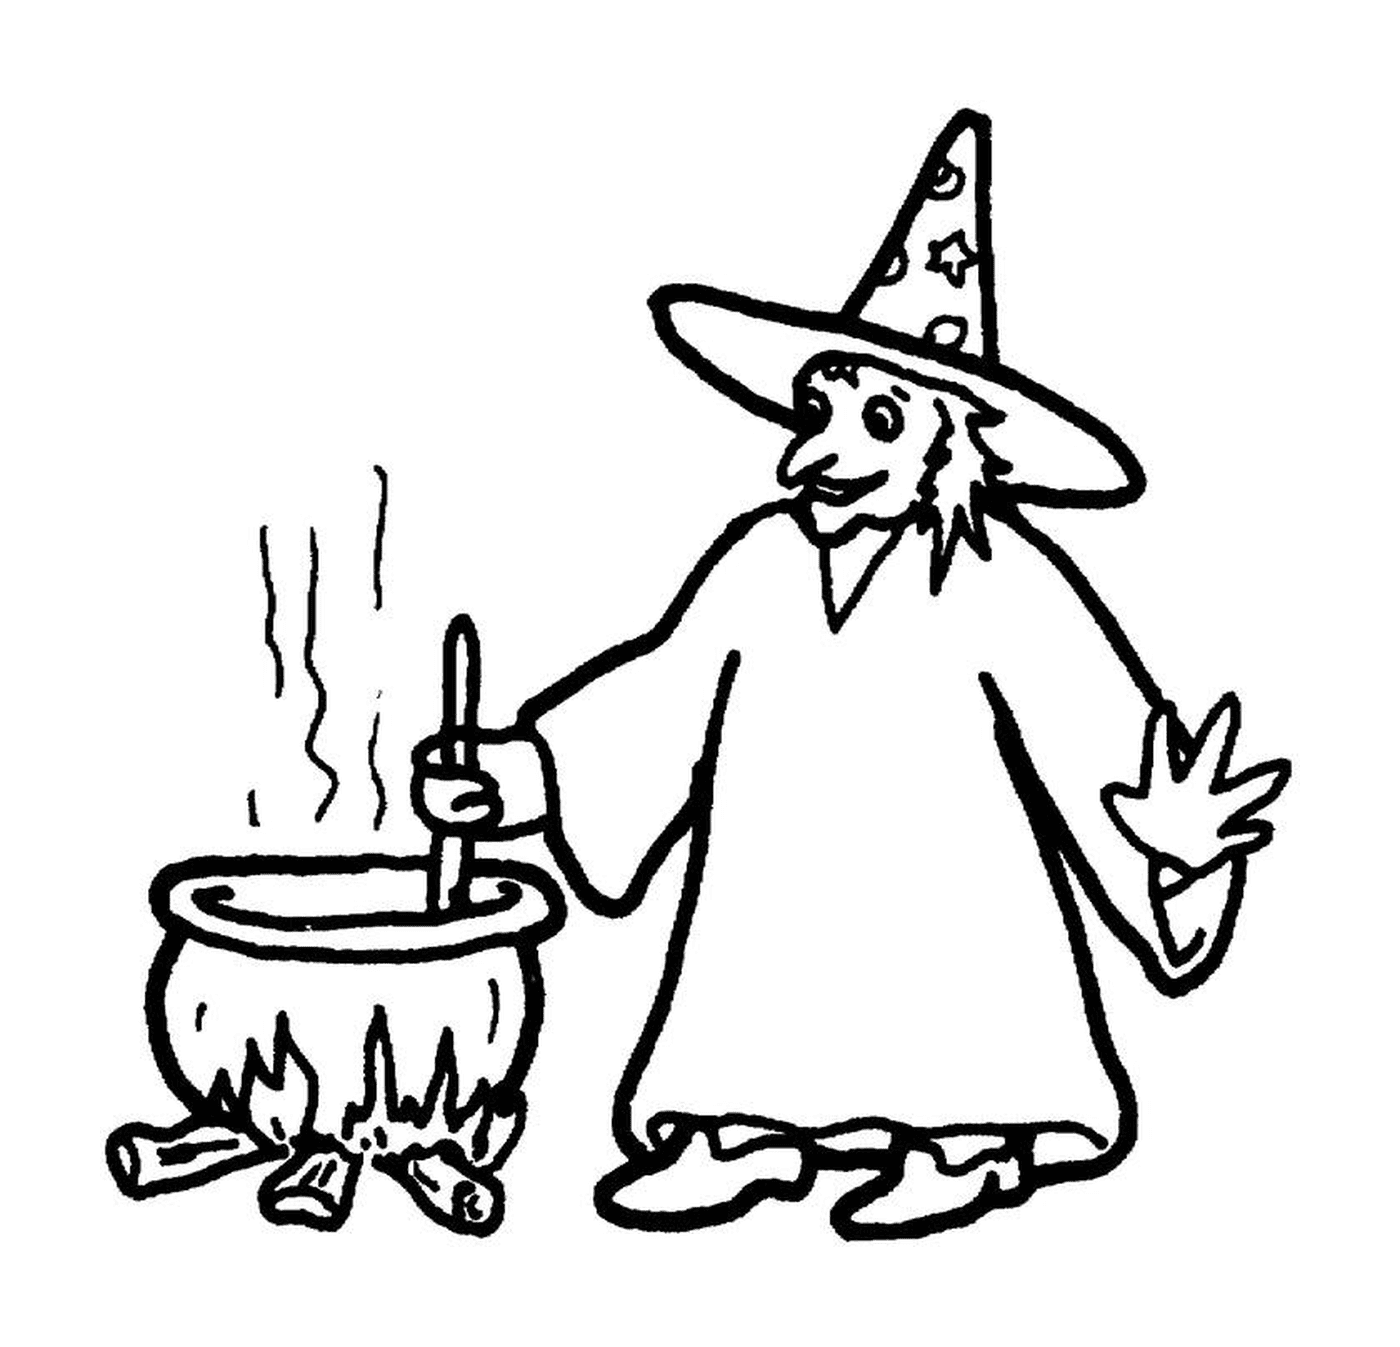  Bruxa mexendo um caldeirão 